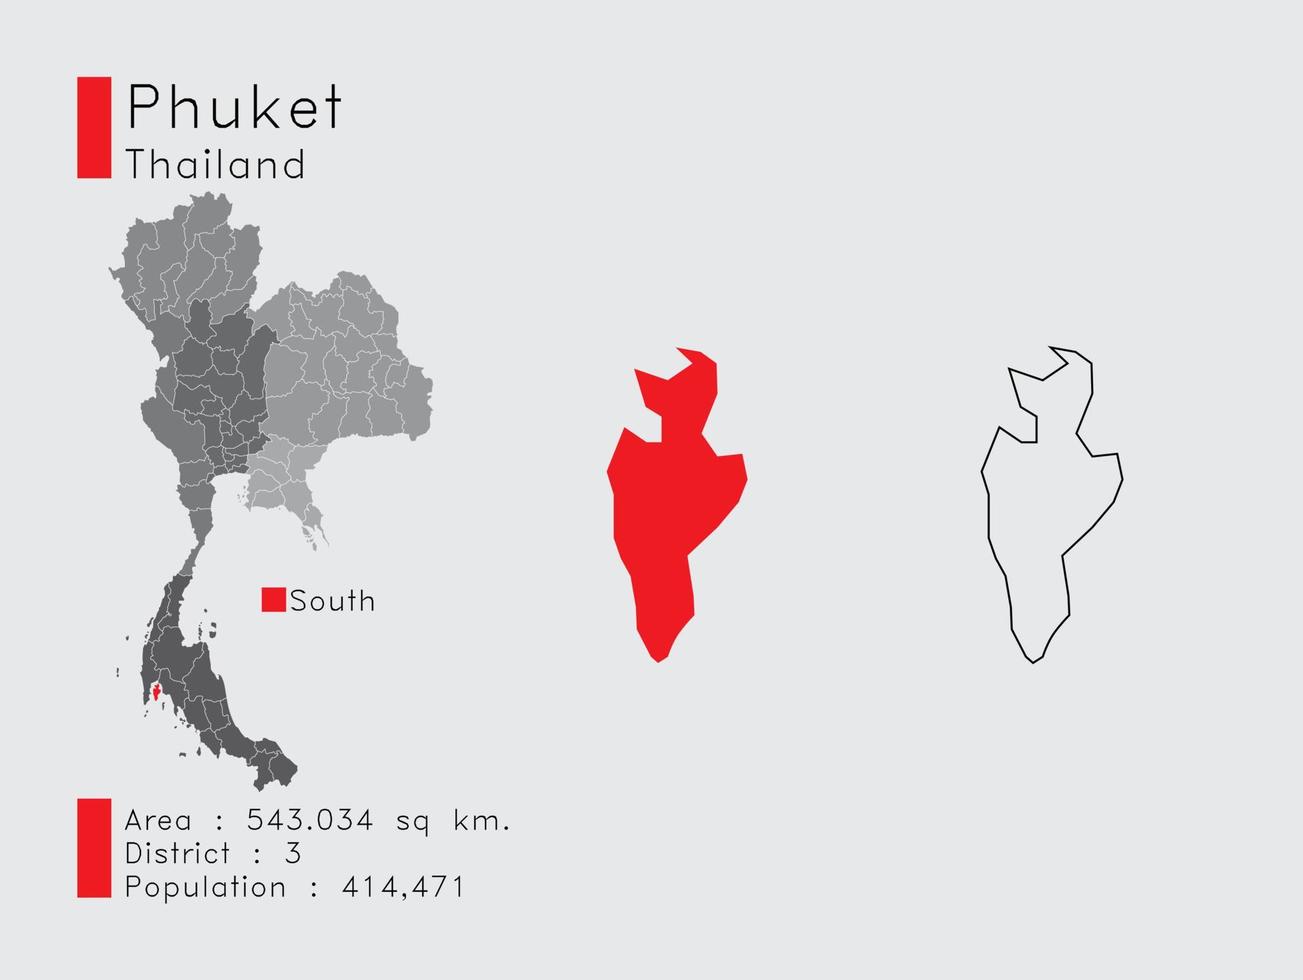 phuket position in thailand eine reihe von infografikelementen für die provinz. und Bereich Bezirk Bevölkerung und Gliederung. Vektor mit grauem Hintergrund.